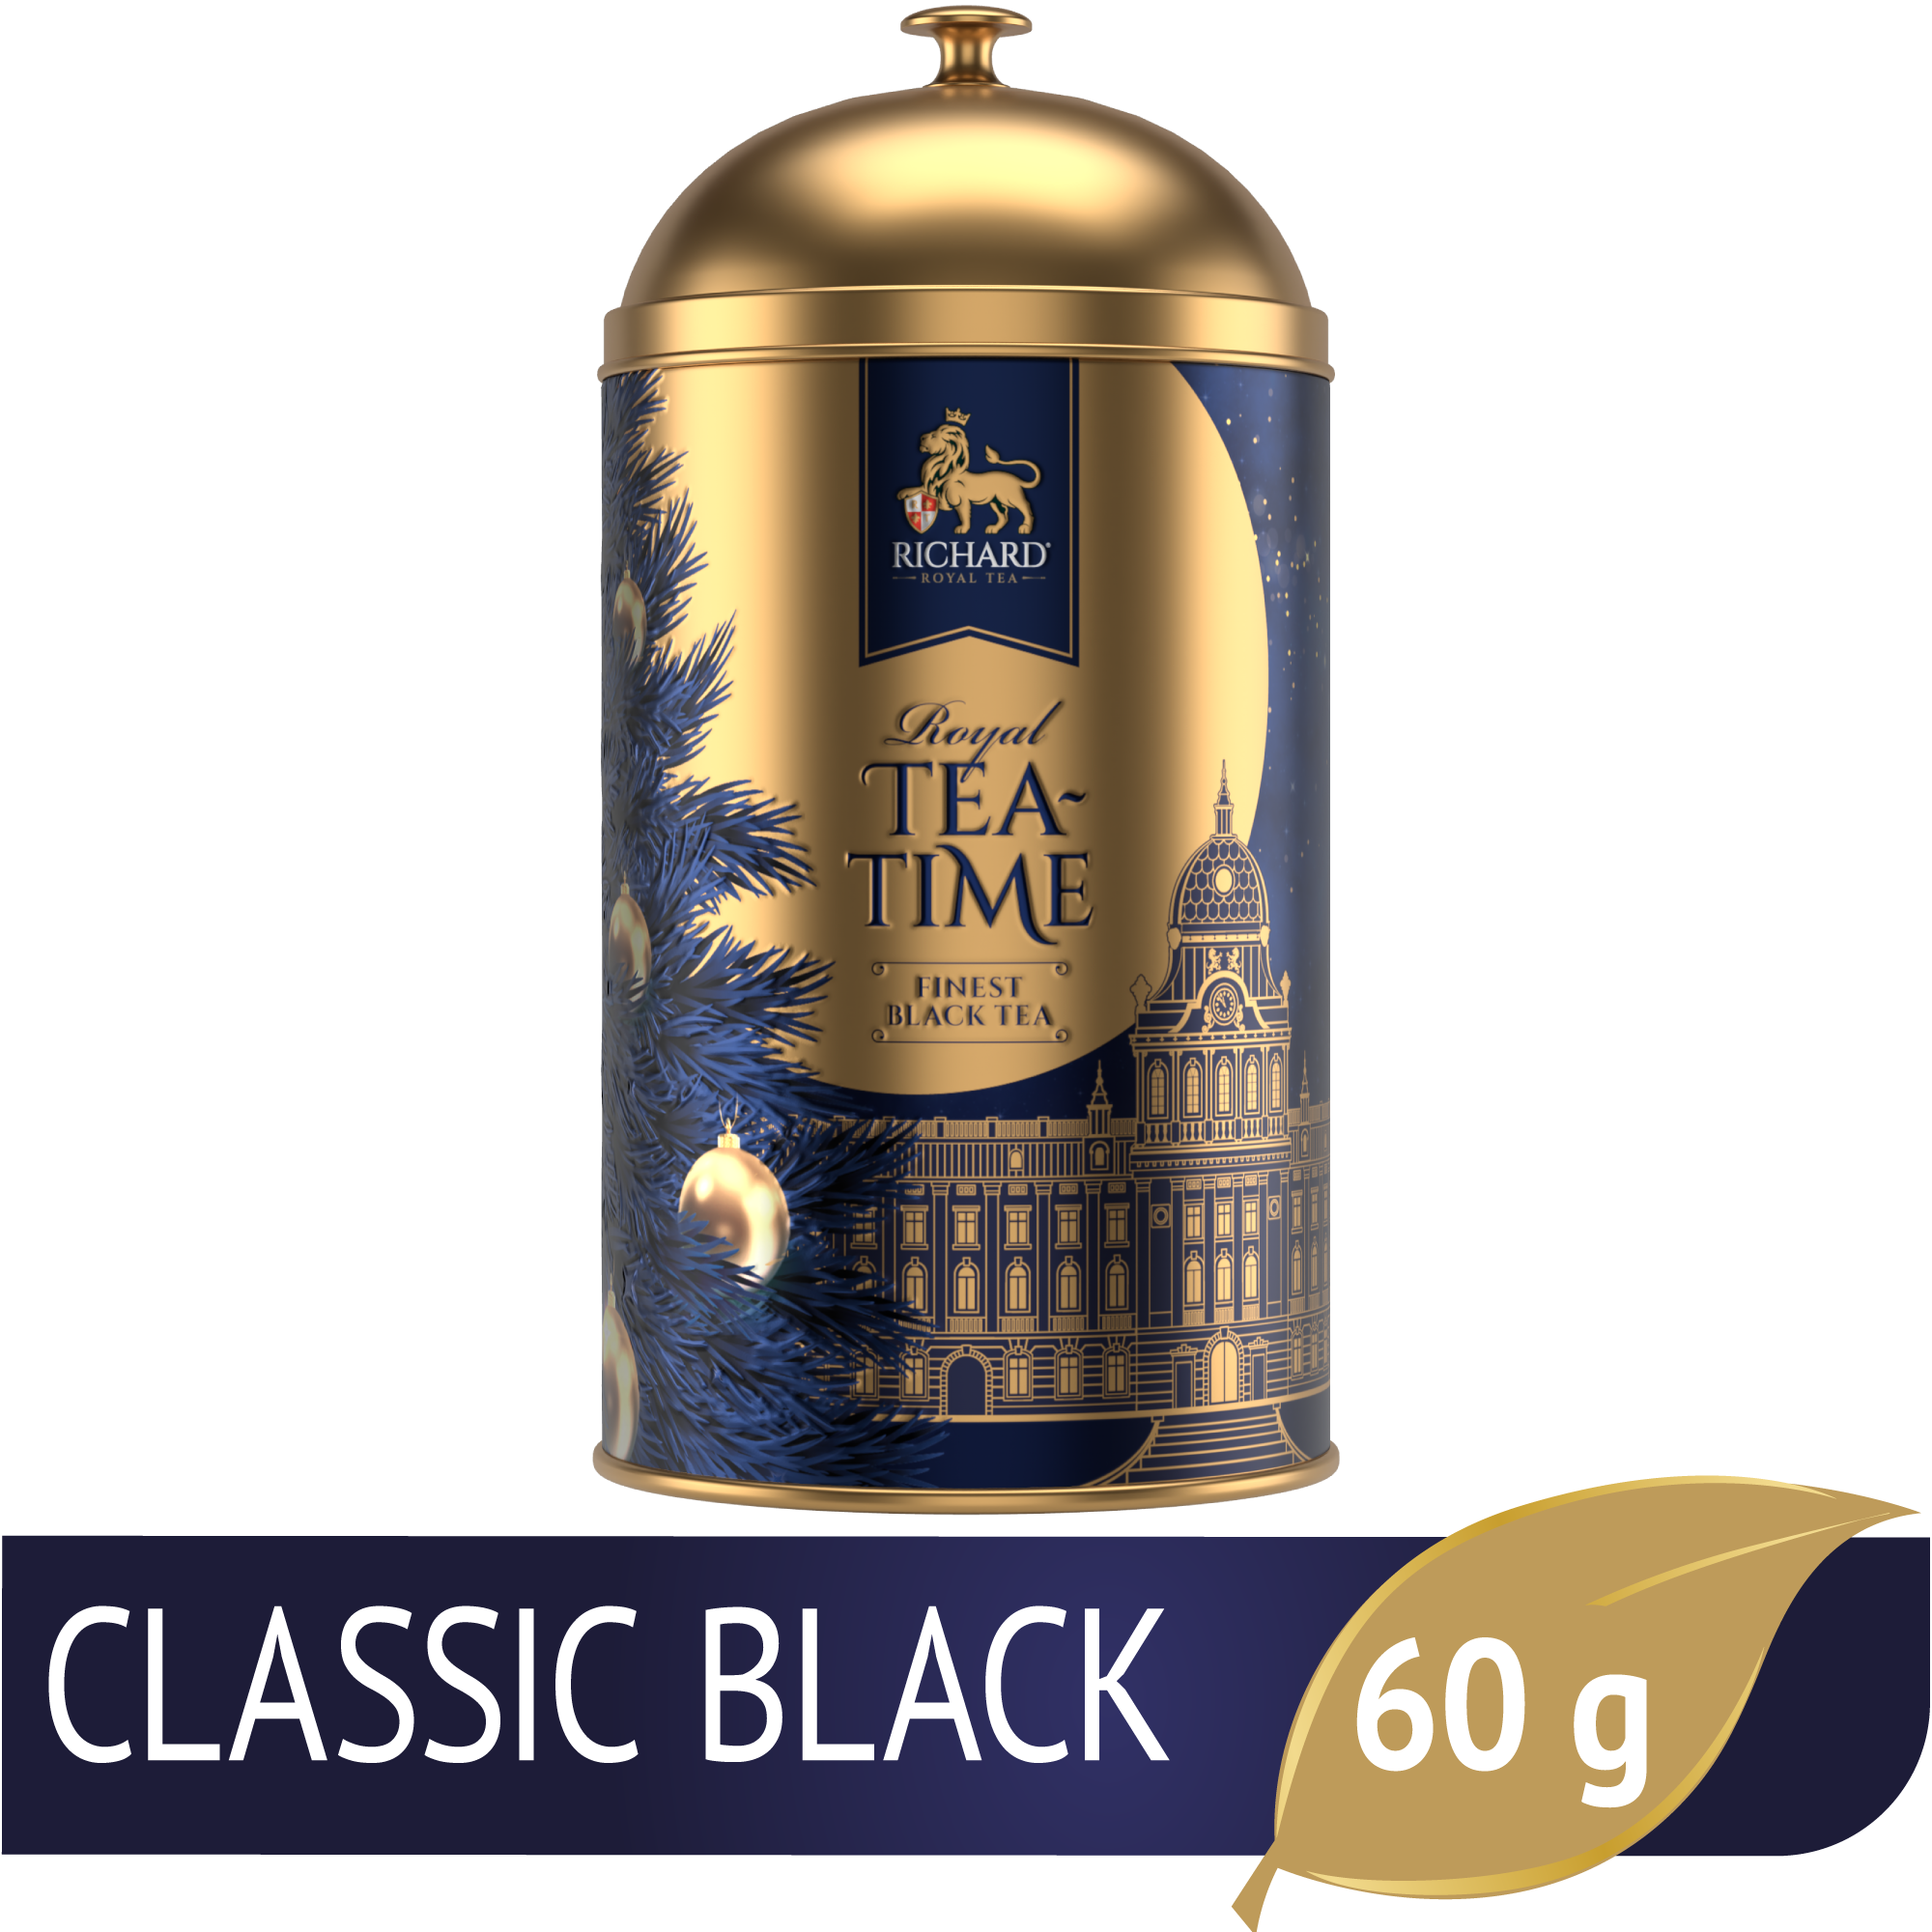 Richard "Királyi Teaidő", szálas fekete tea, fémdobozos 60g